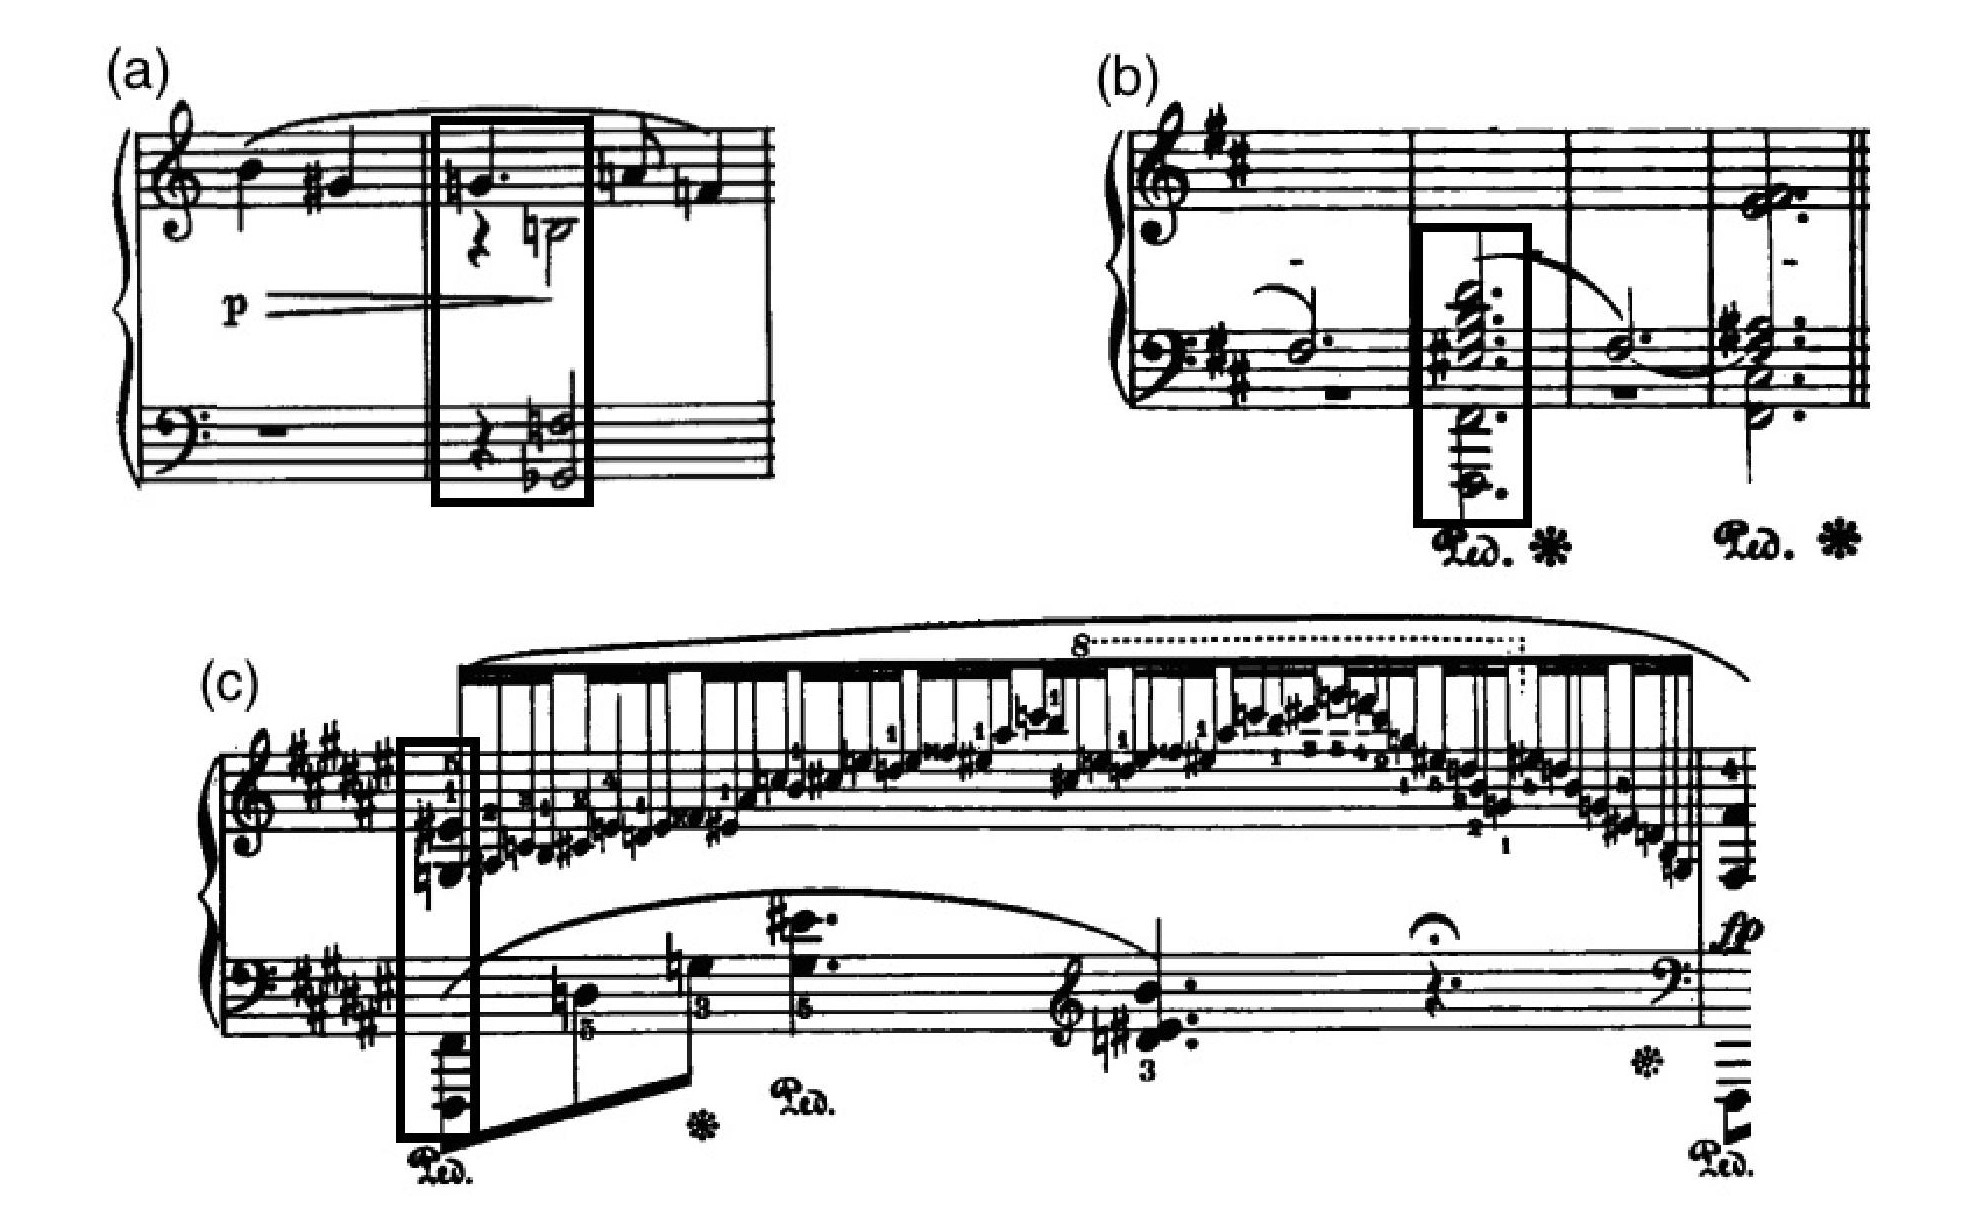 Fig. 3: (a) Schoenberg: Op. 11, nº 1, c. 1-2; (b) Chopin: Polonaise-Fantaisie, c. 144-147; (c) Chopin: Barcarolle, c. 110.